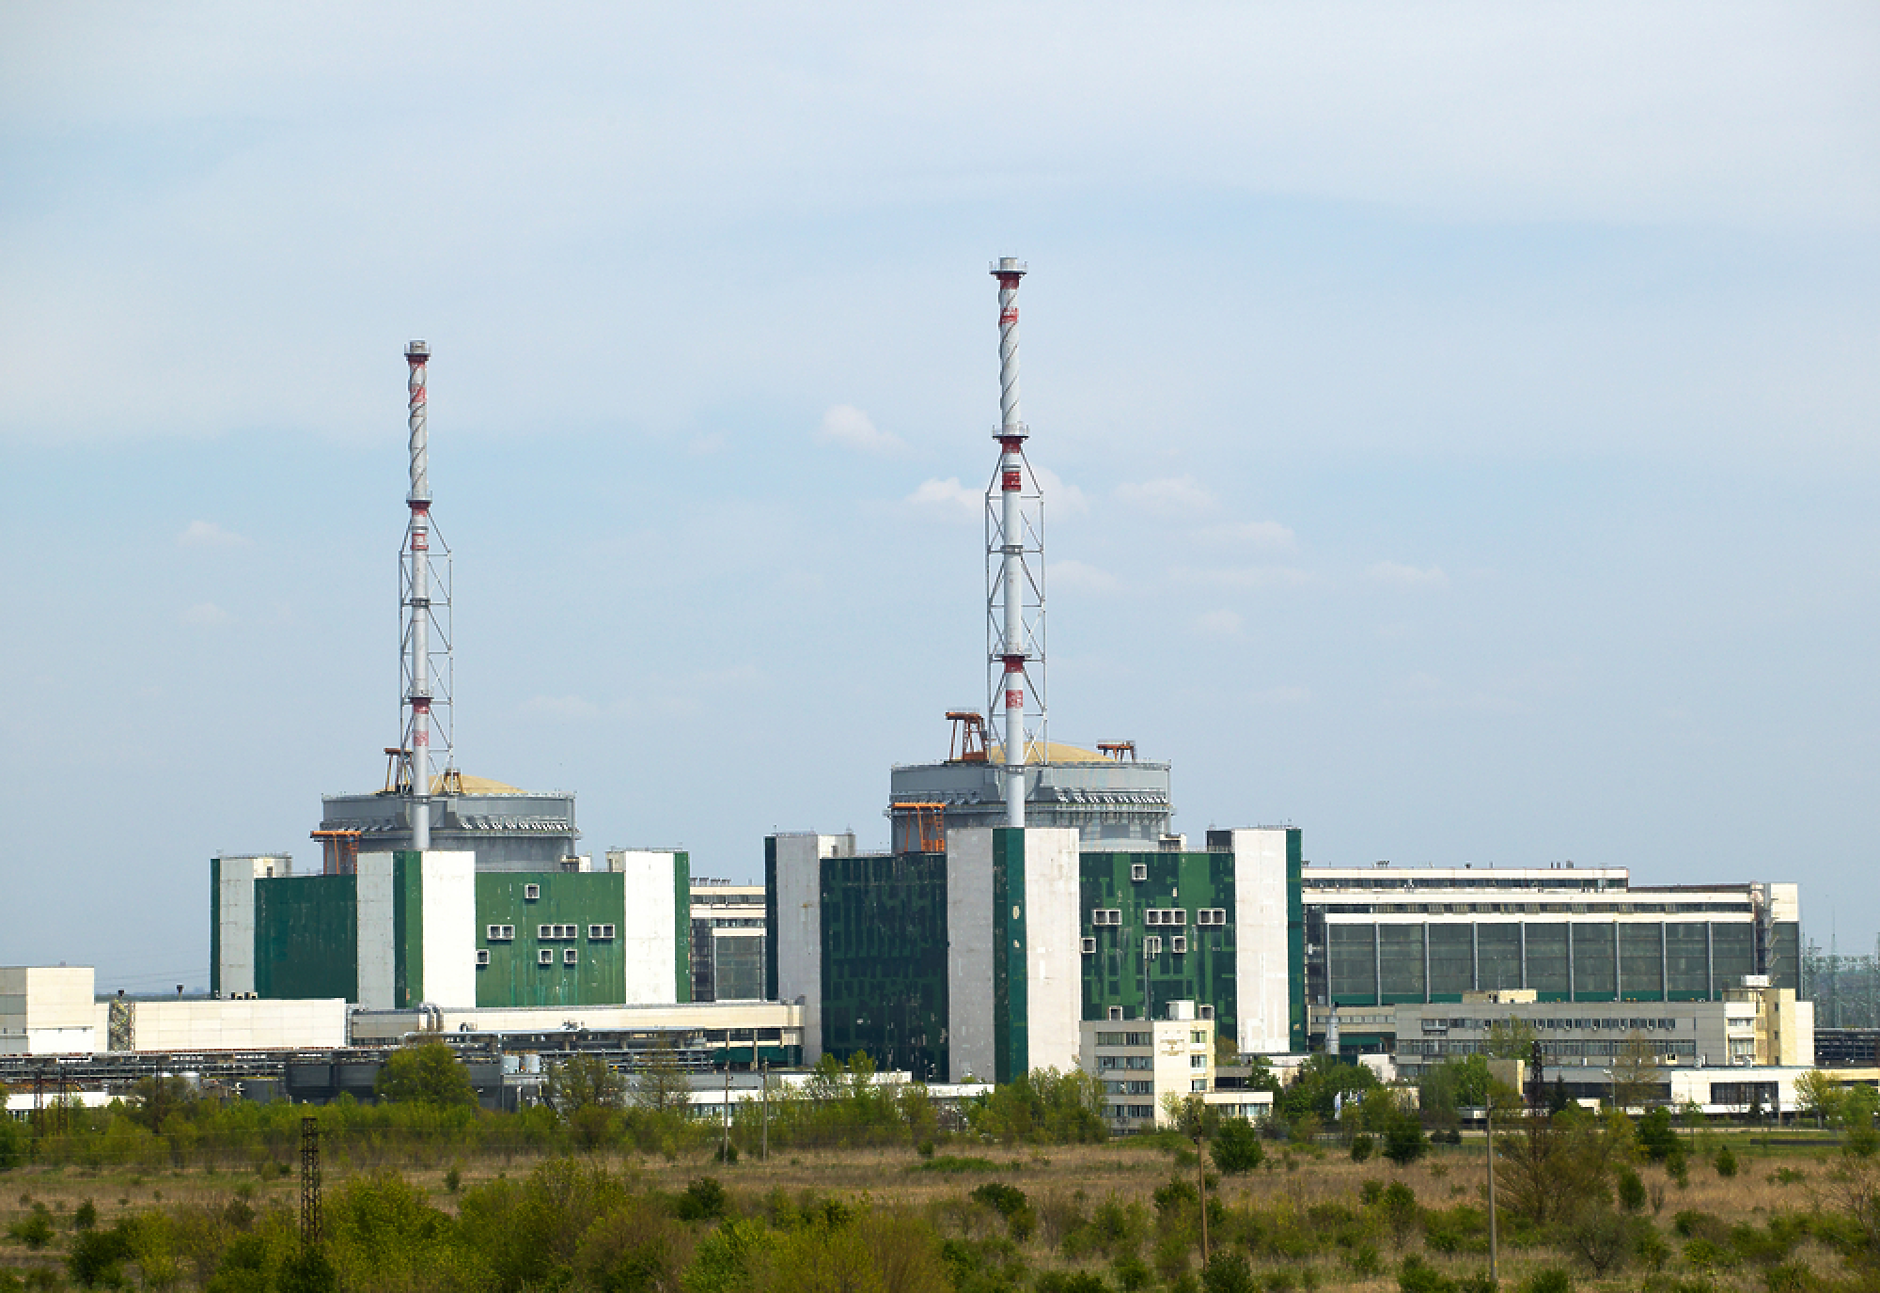 Ядрените електроцентрали произвеждат близо 22% от тока  в ЕС